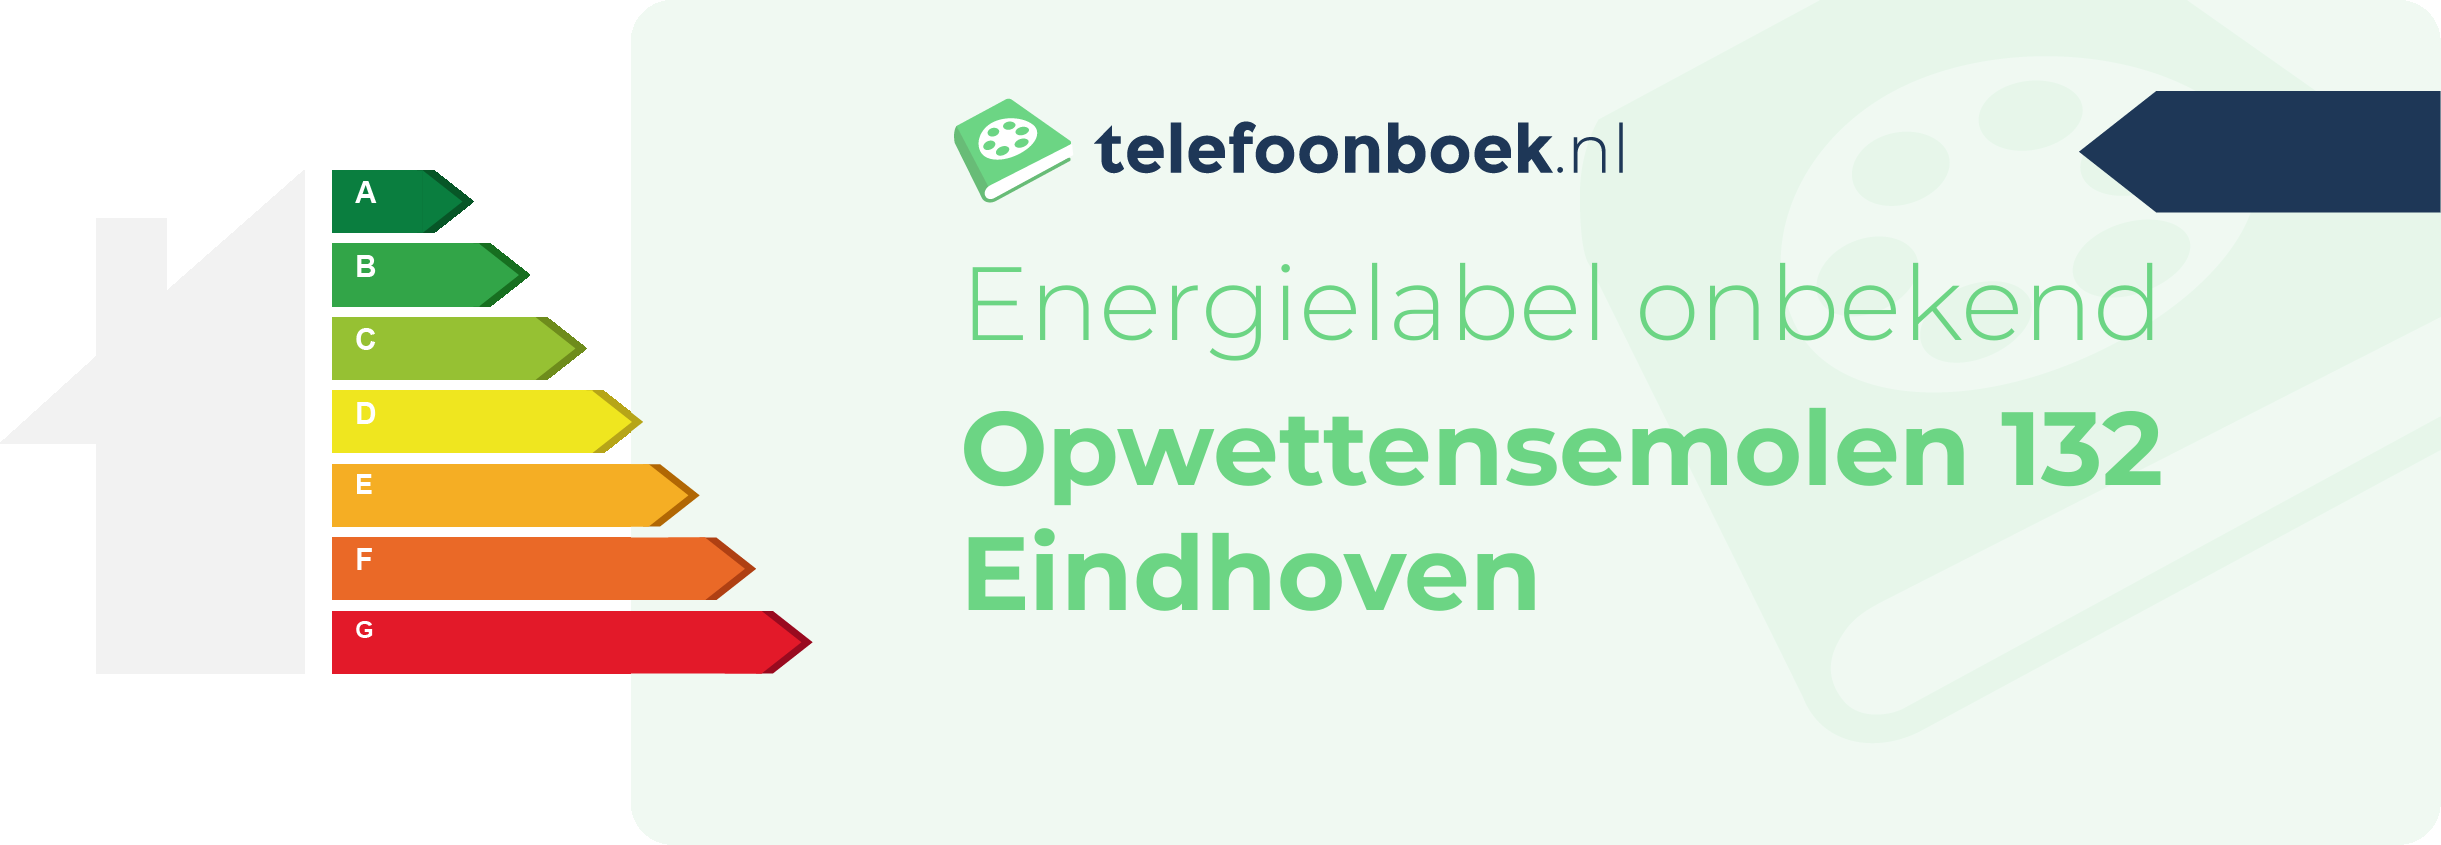 Energielabel Opwettensemolen 132 Eindhoven